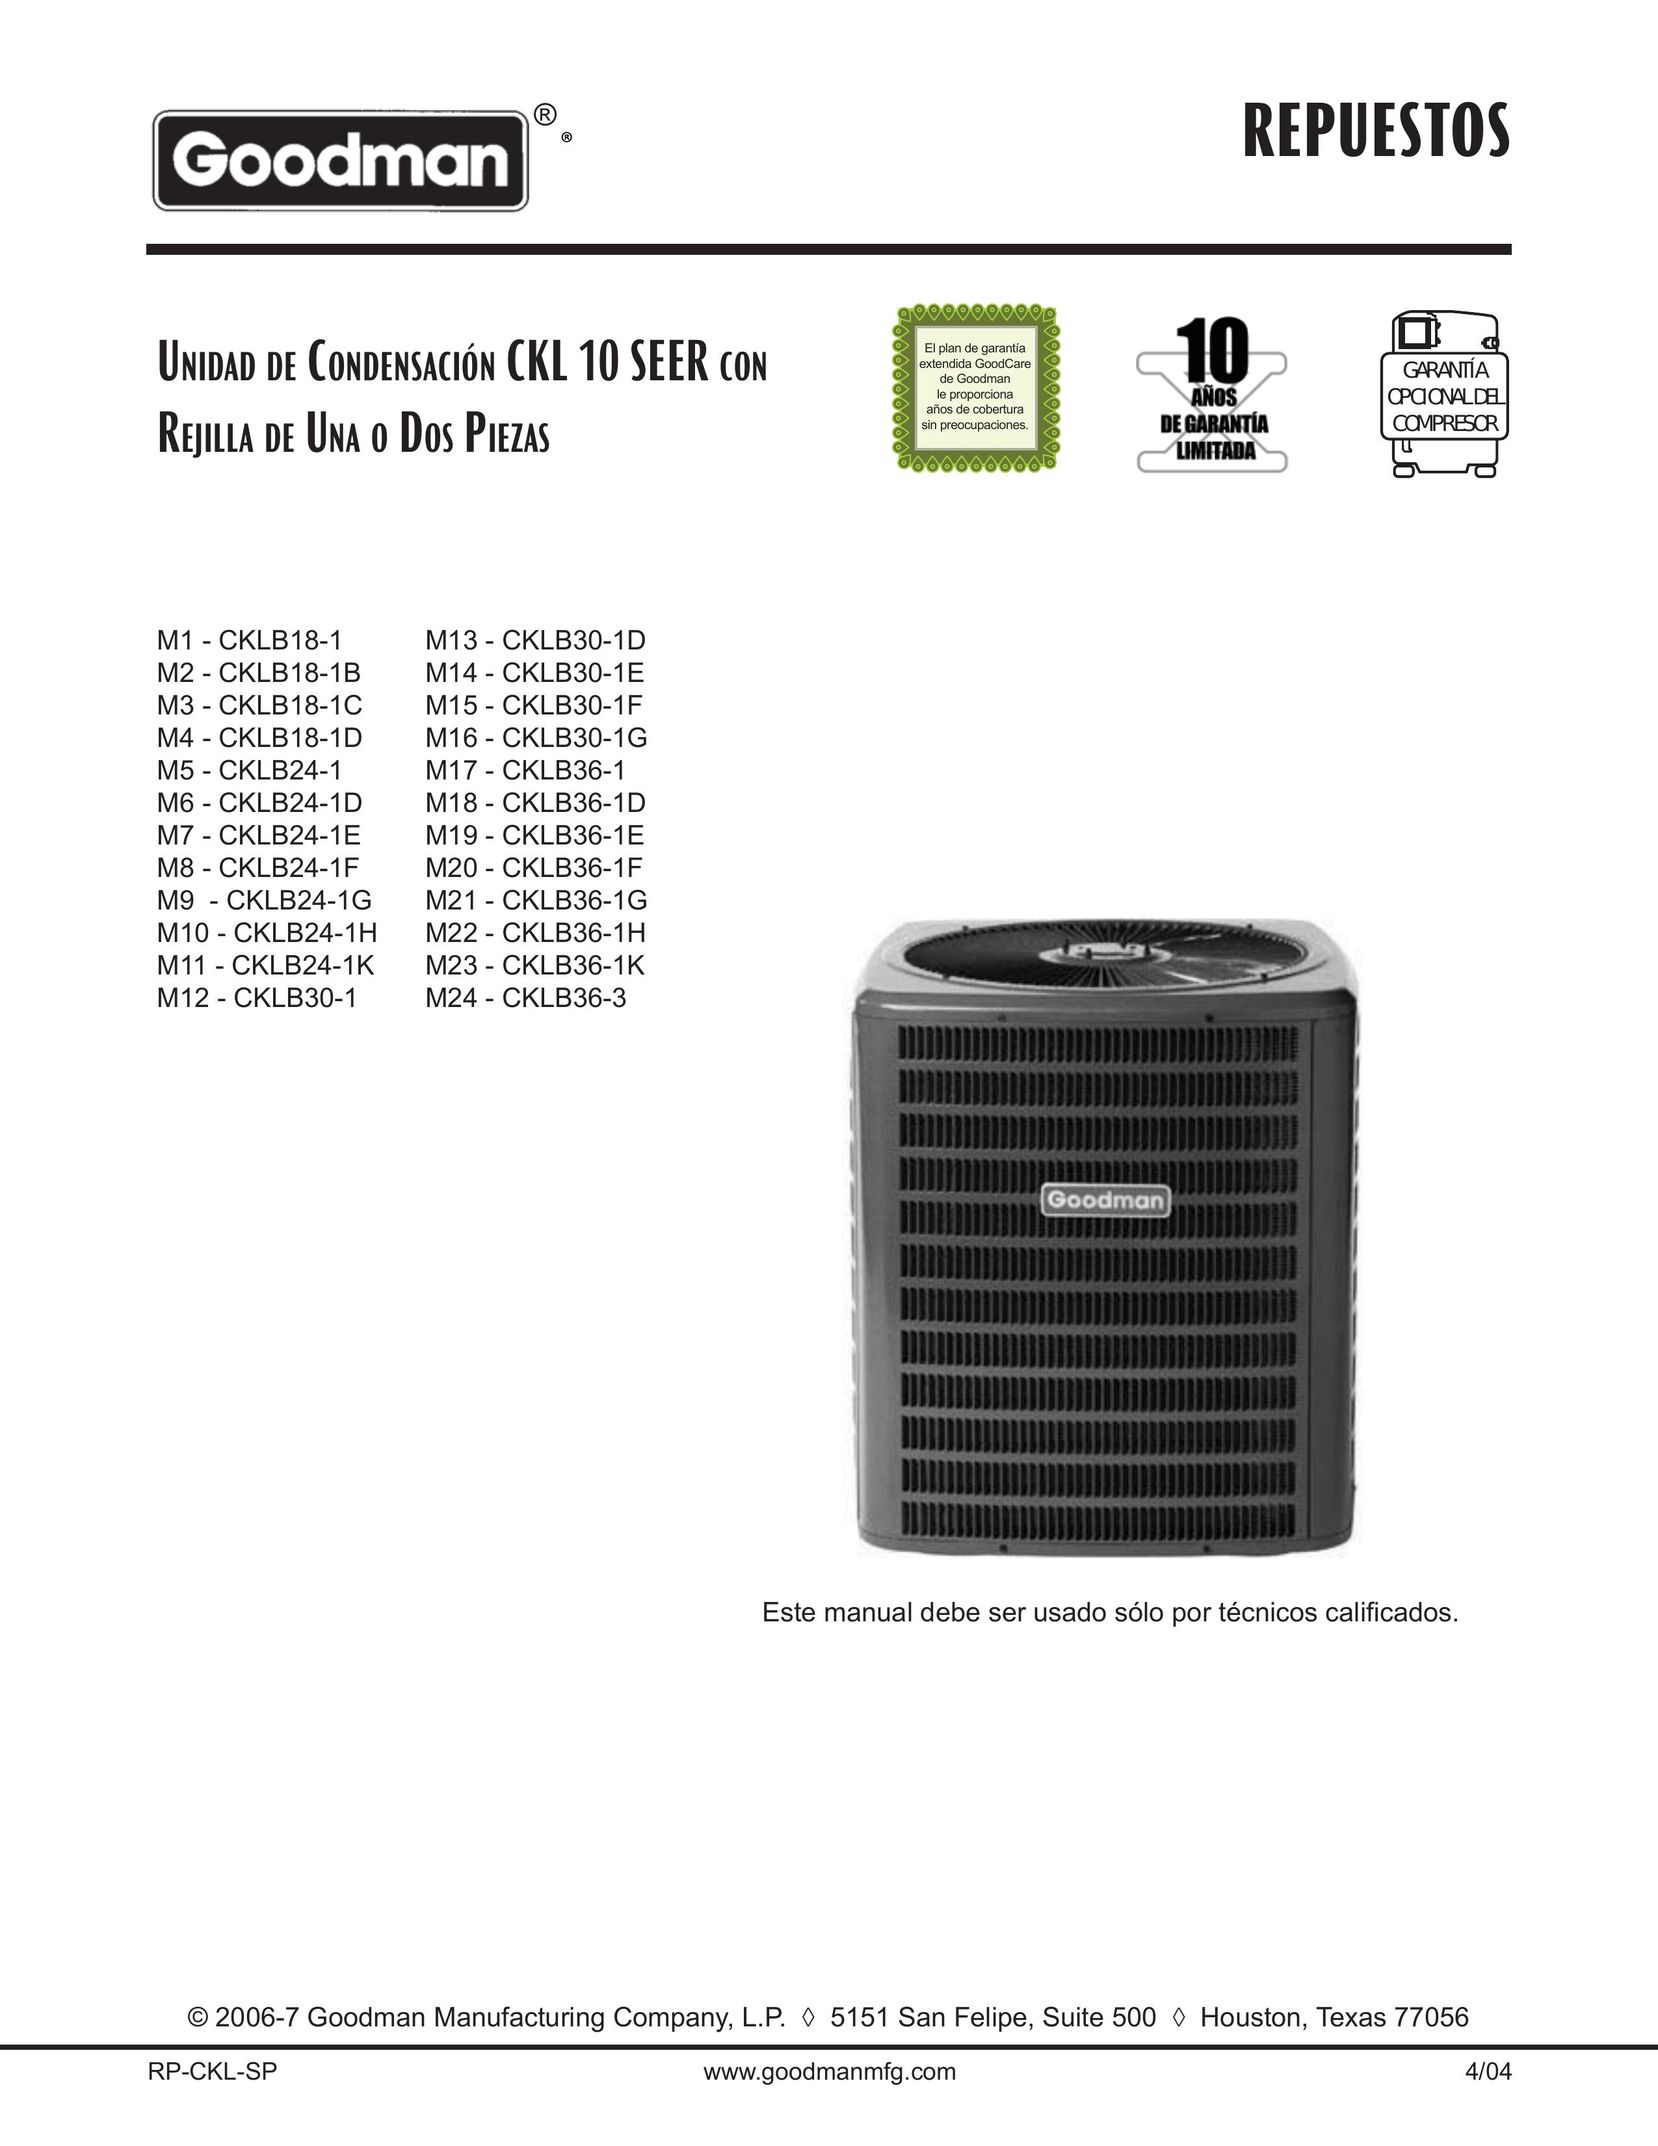 Goodman Mfg CKLB24-1K Air Conditioner User Manual